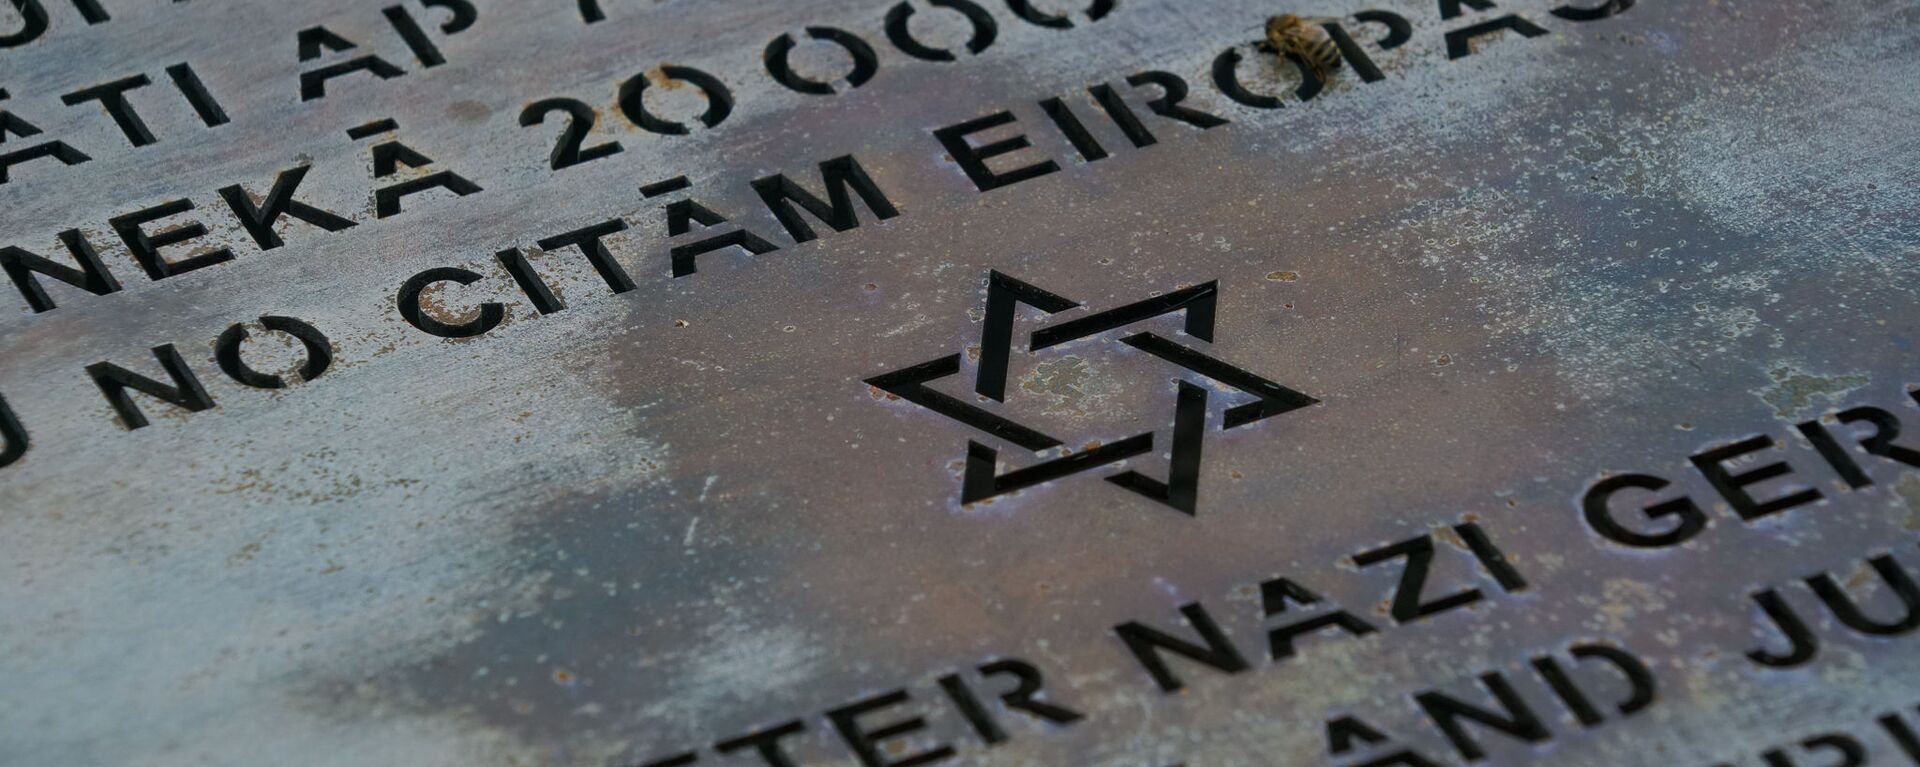 Памятный знак у стен сгоревшей Рижской хоральной синагоги - Sputnik Латвия, 1920, 03.07.2020